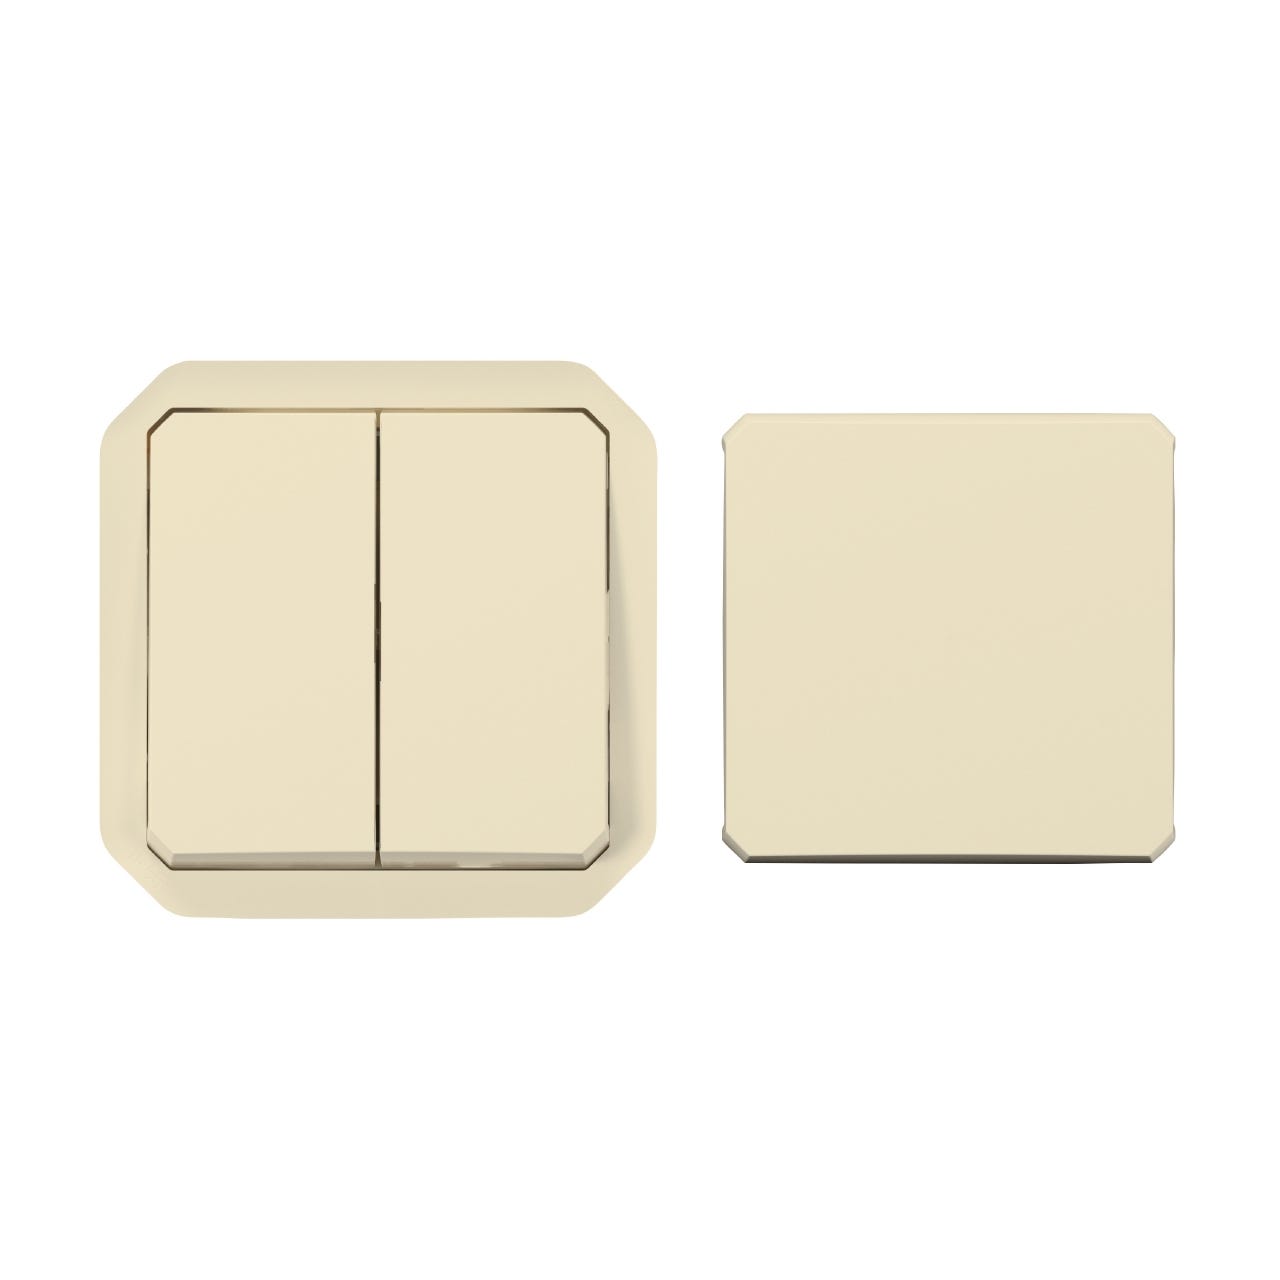 transformeur - beige - composable - legrand plexo 069809l 0